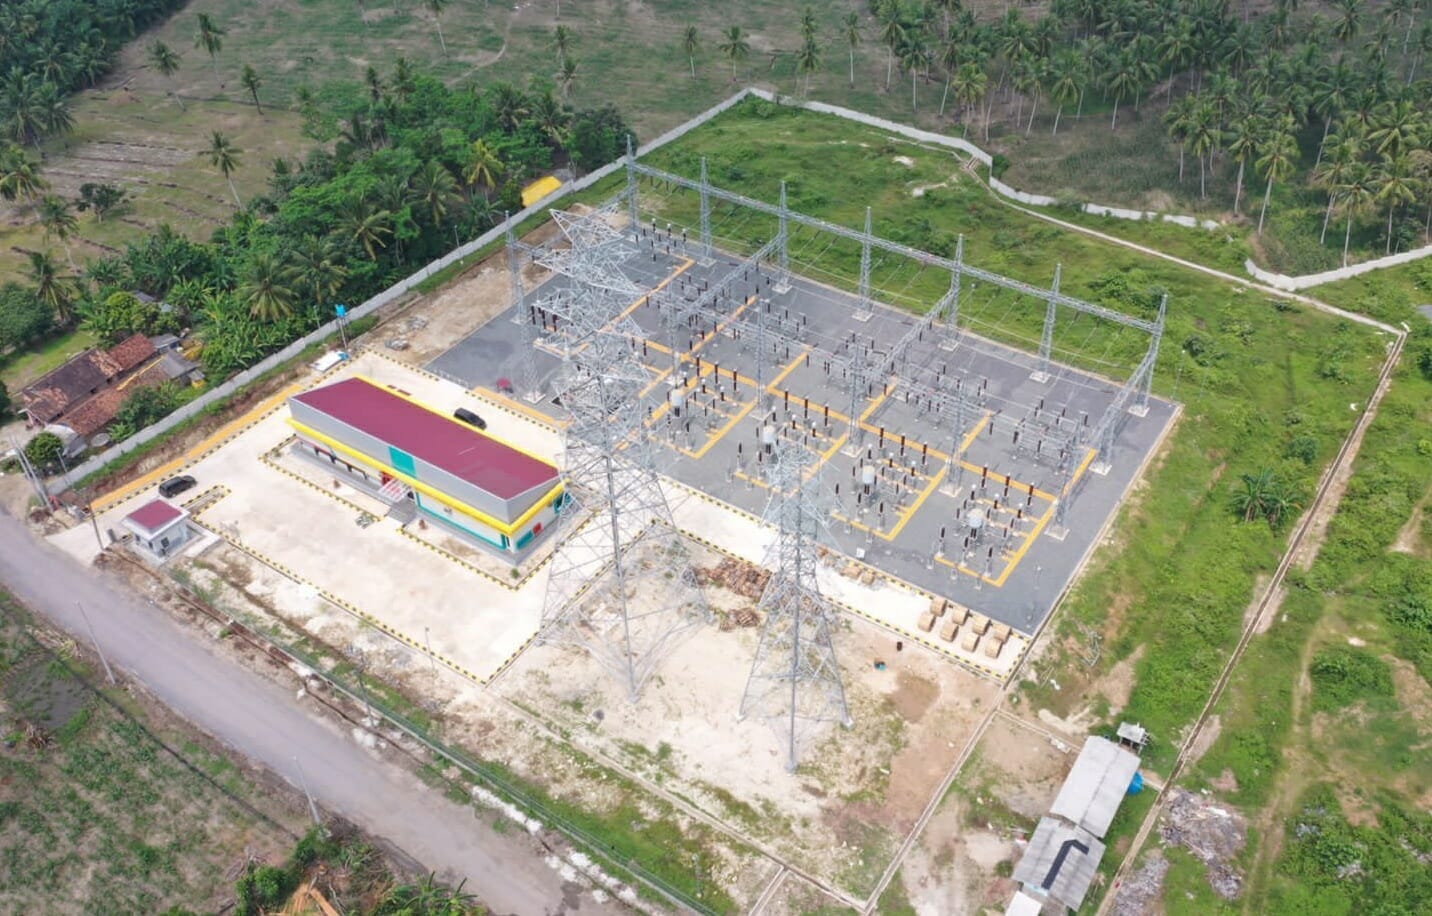 Dukung Pembangunan dan Pertumbuhan Ekonomi Lampung, PLN Perkuat Kelistrikan Melalui Operasi Gardu Induk 150 kV Sidomulyo